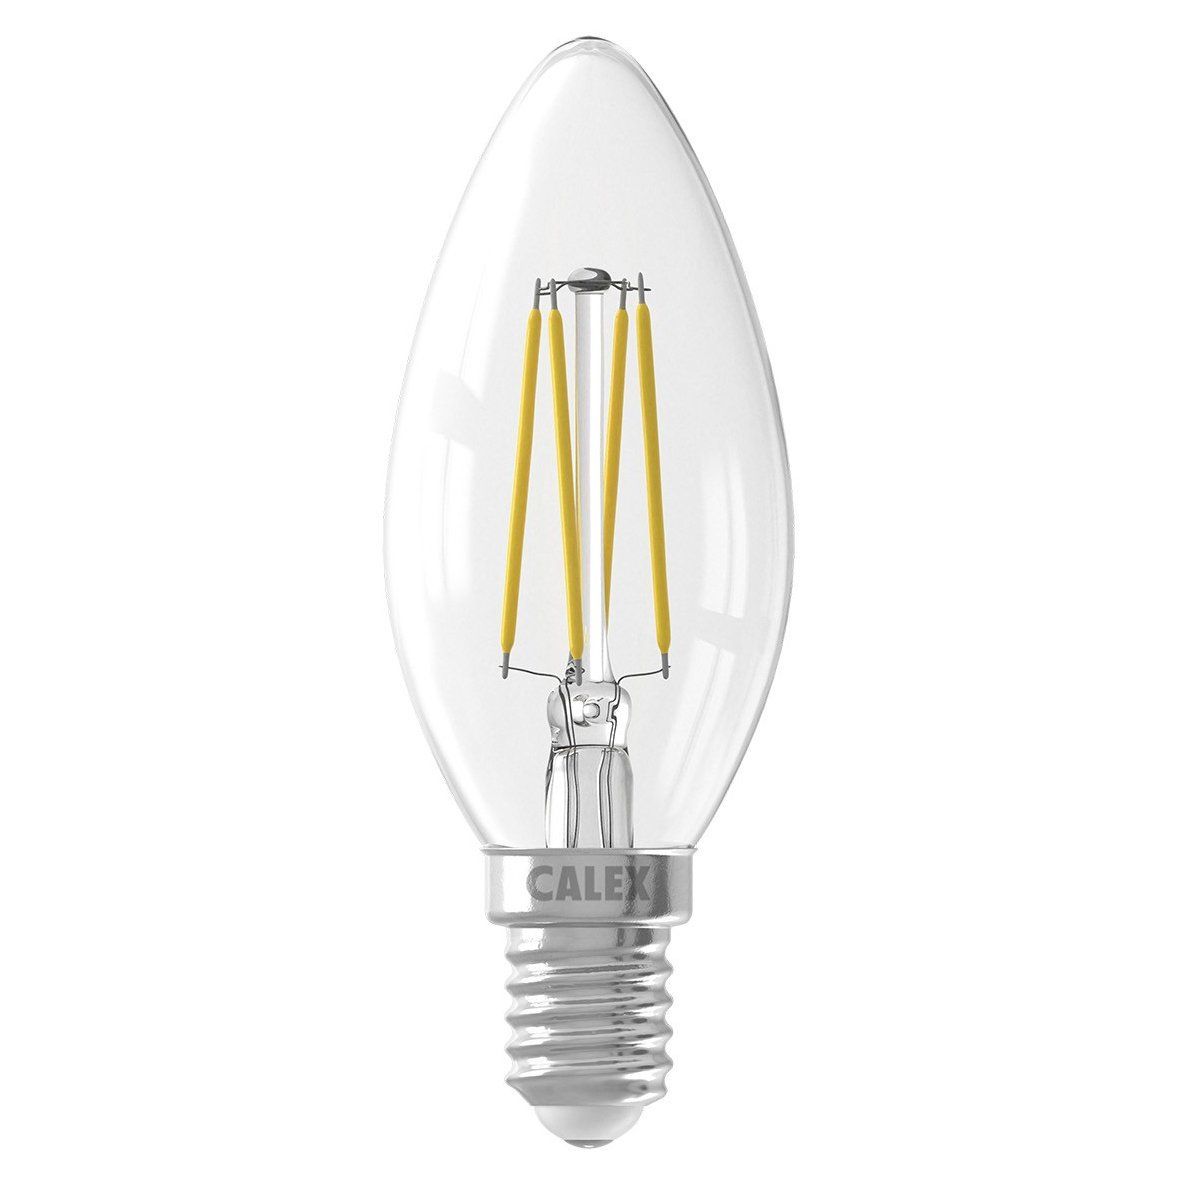 Ampoules à LED blanches chaleureuses, encastrées, enveloppe transpare -  LumenXL